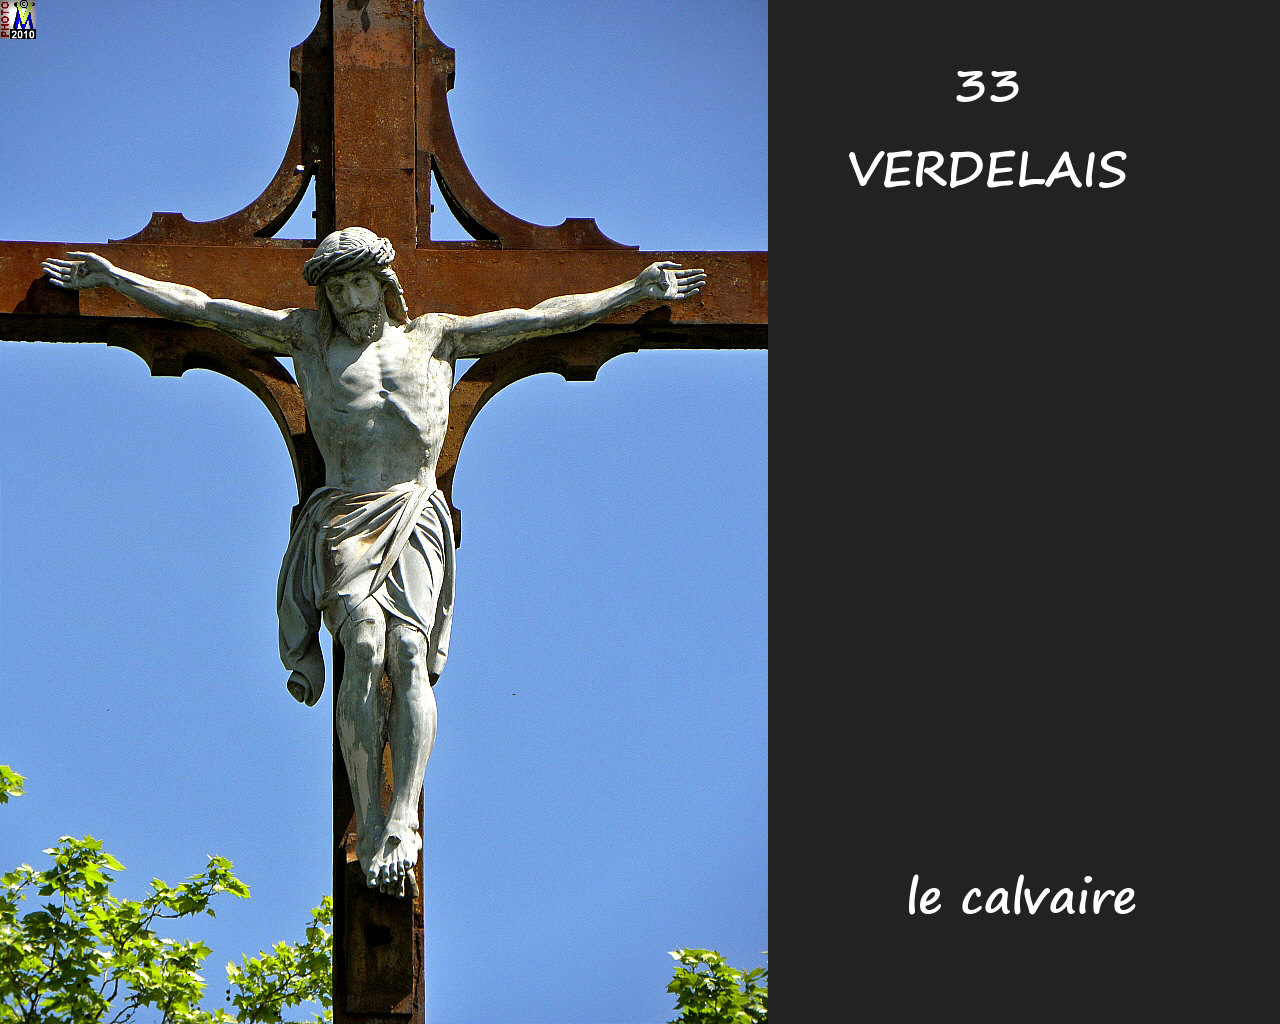 33VERDELAIS_calvaire_144.jpg